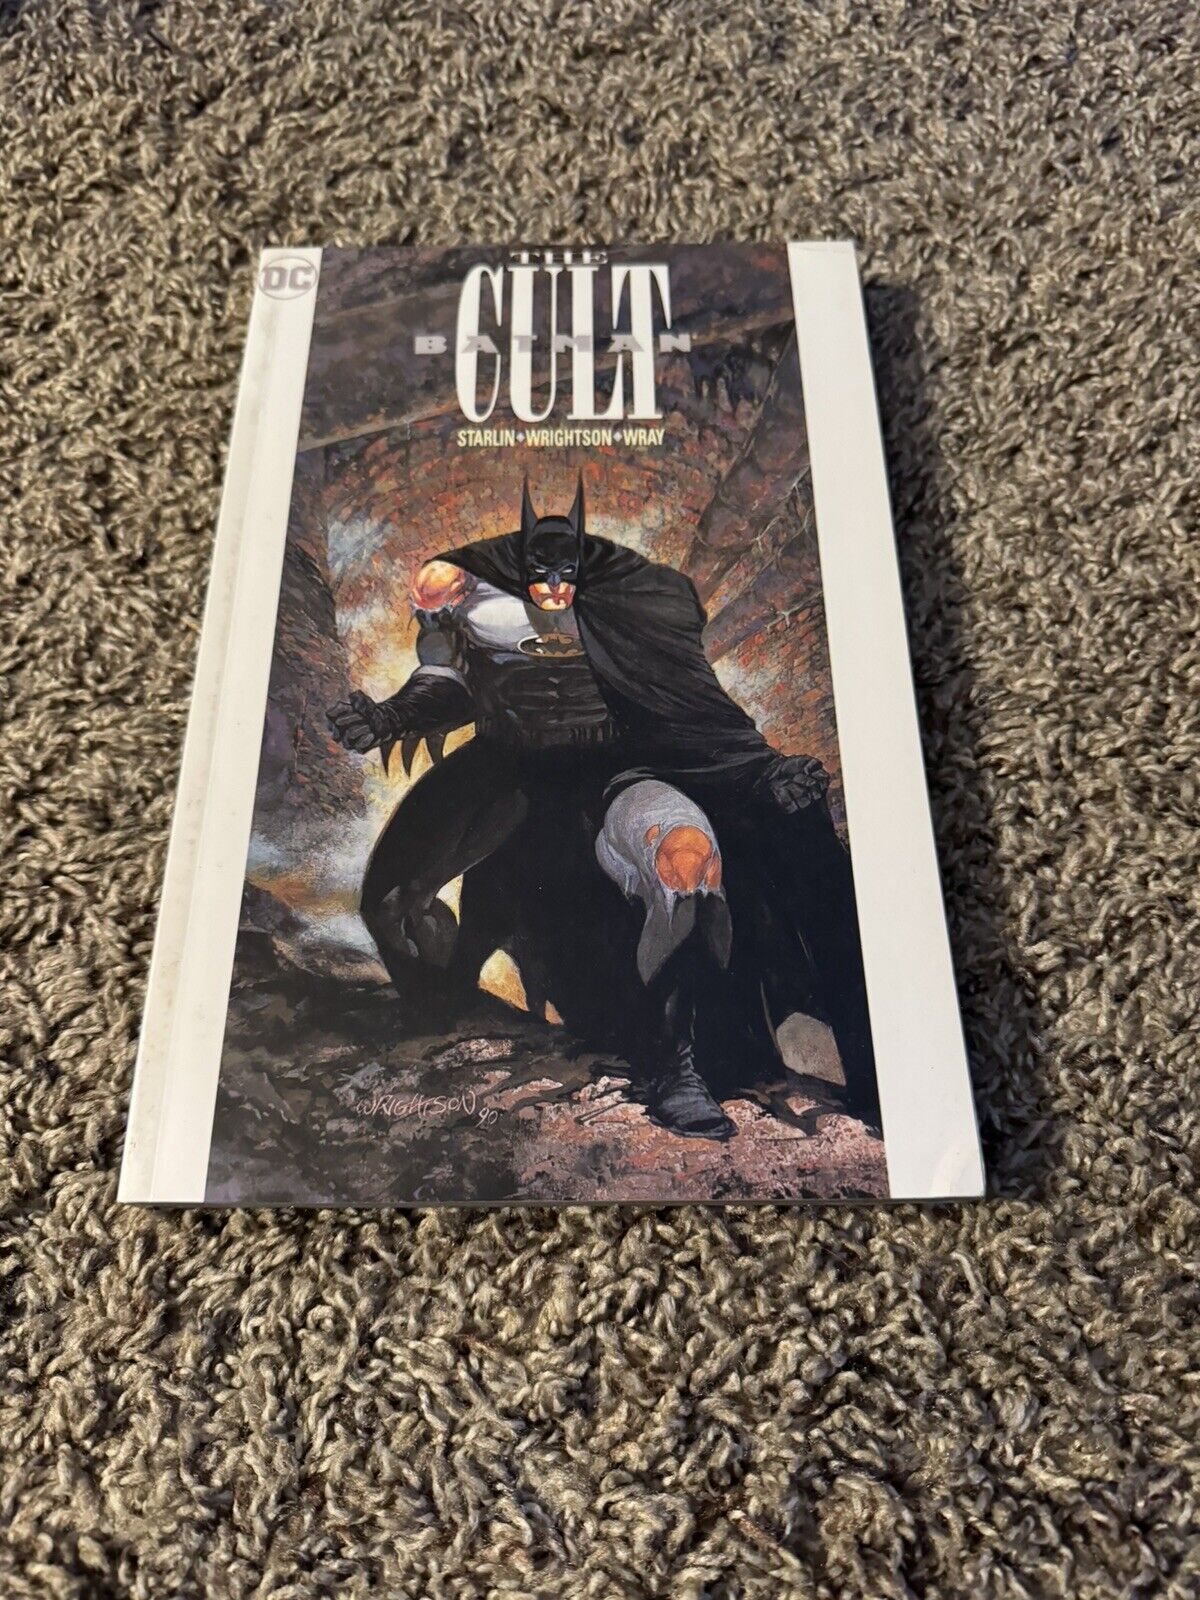 Batman: The Cult Graphic Novel DC Comics - Seventh Printing